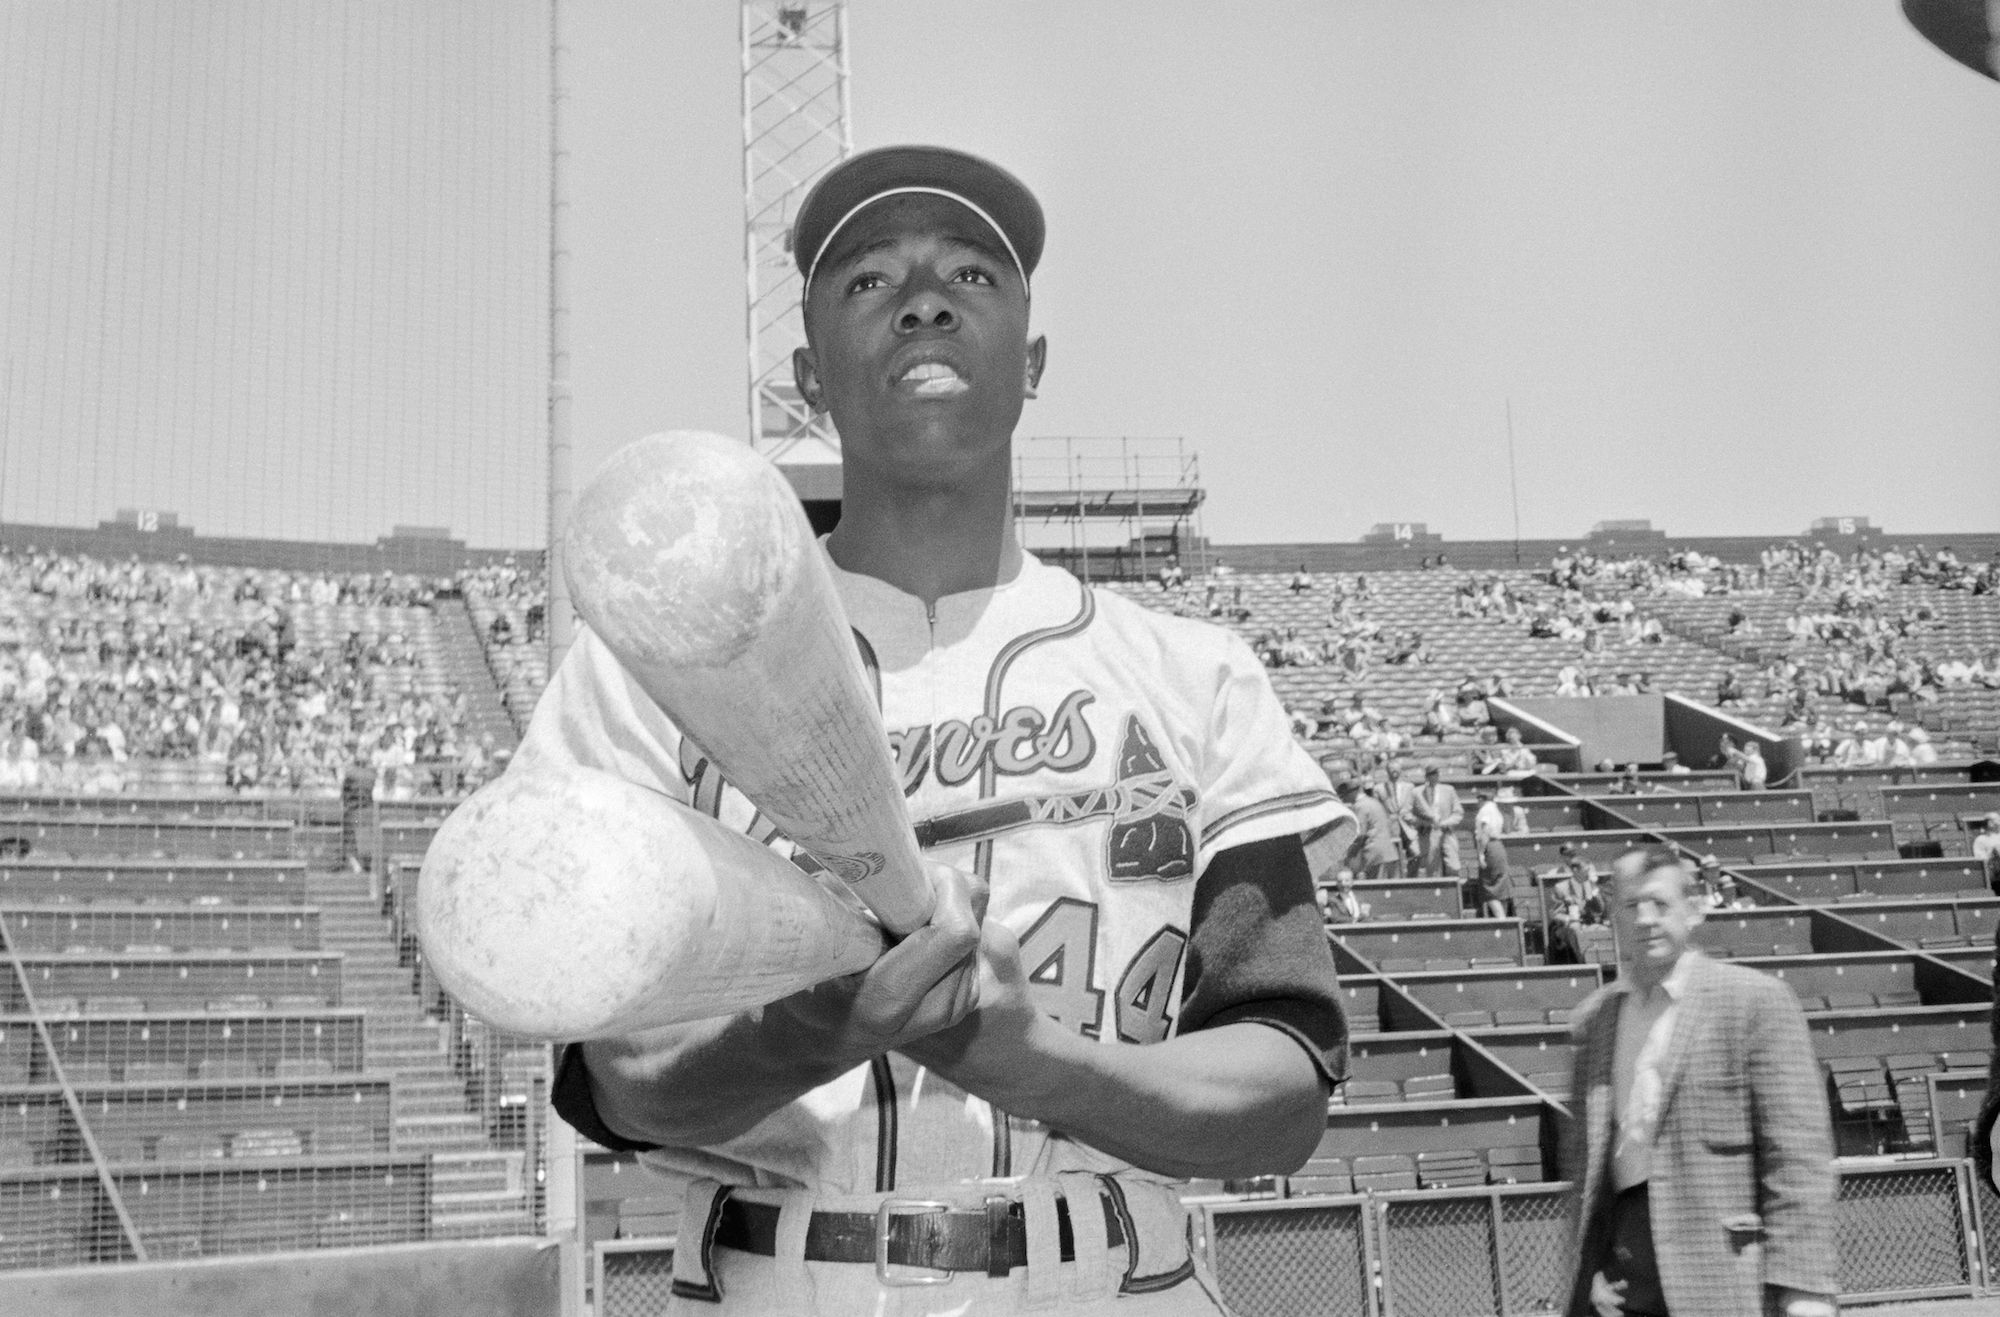 Hank Aaron Of The Milwaukee Braves by Bettmann